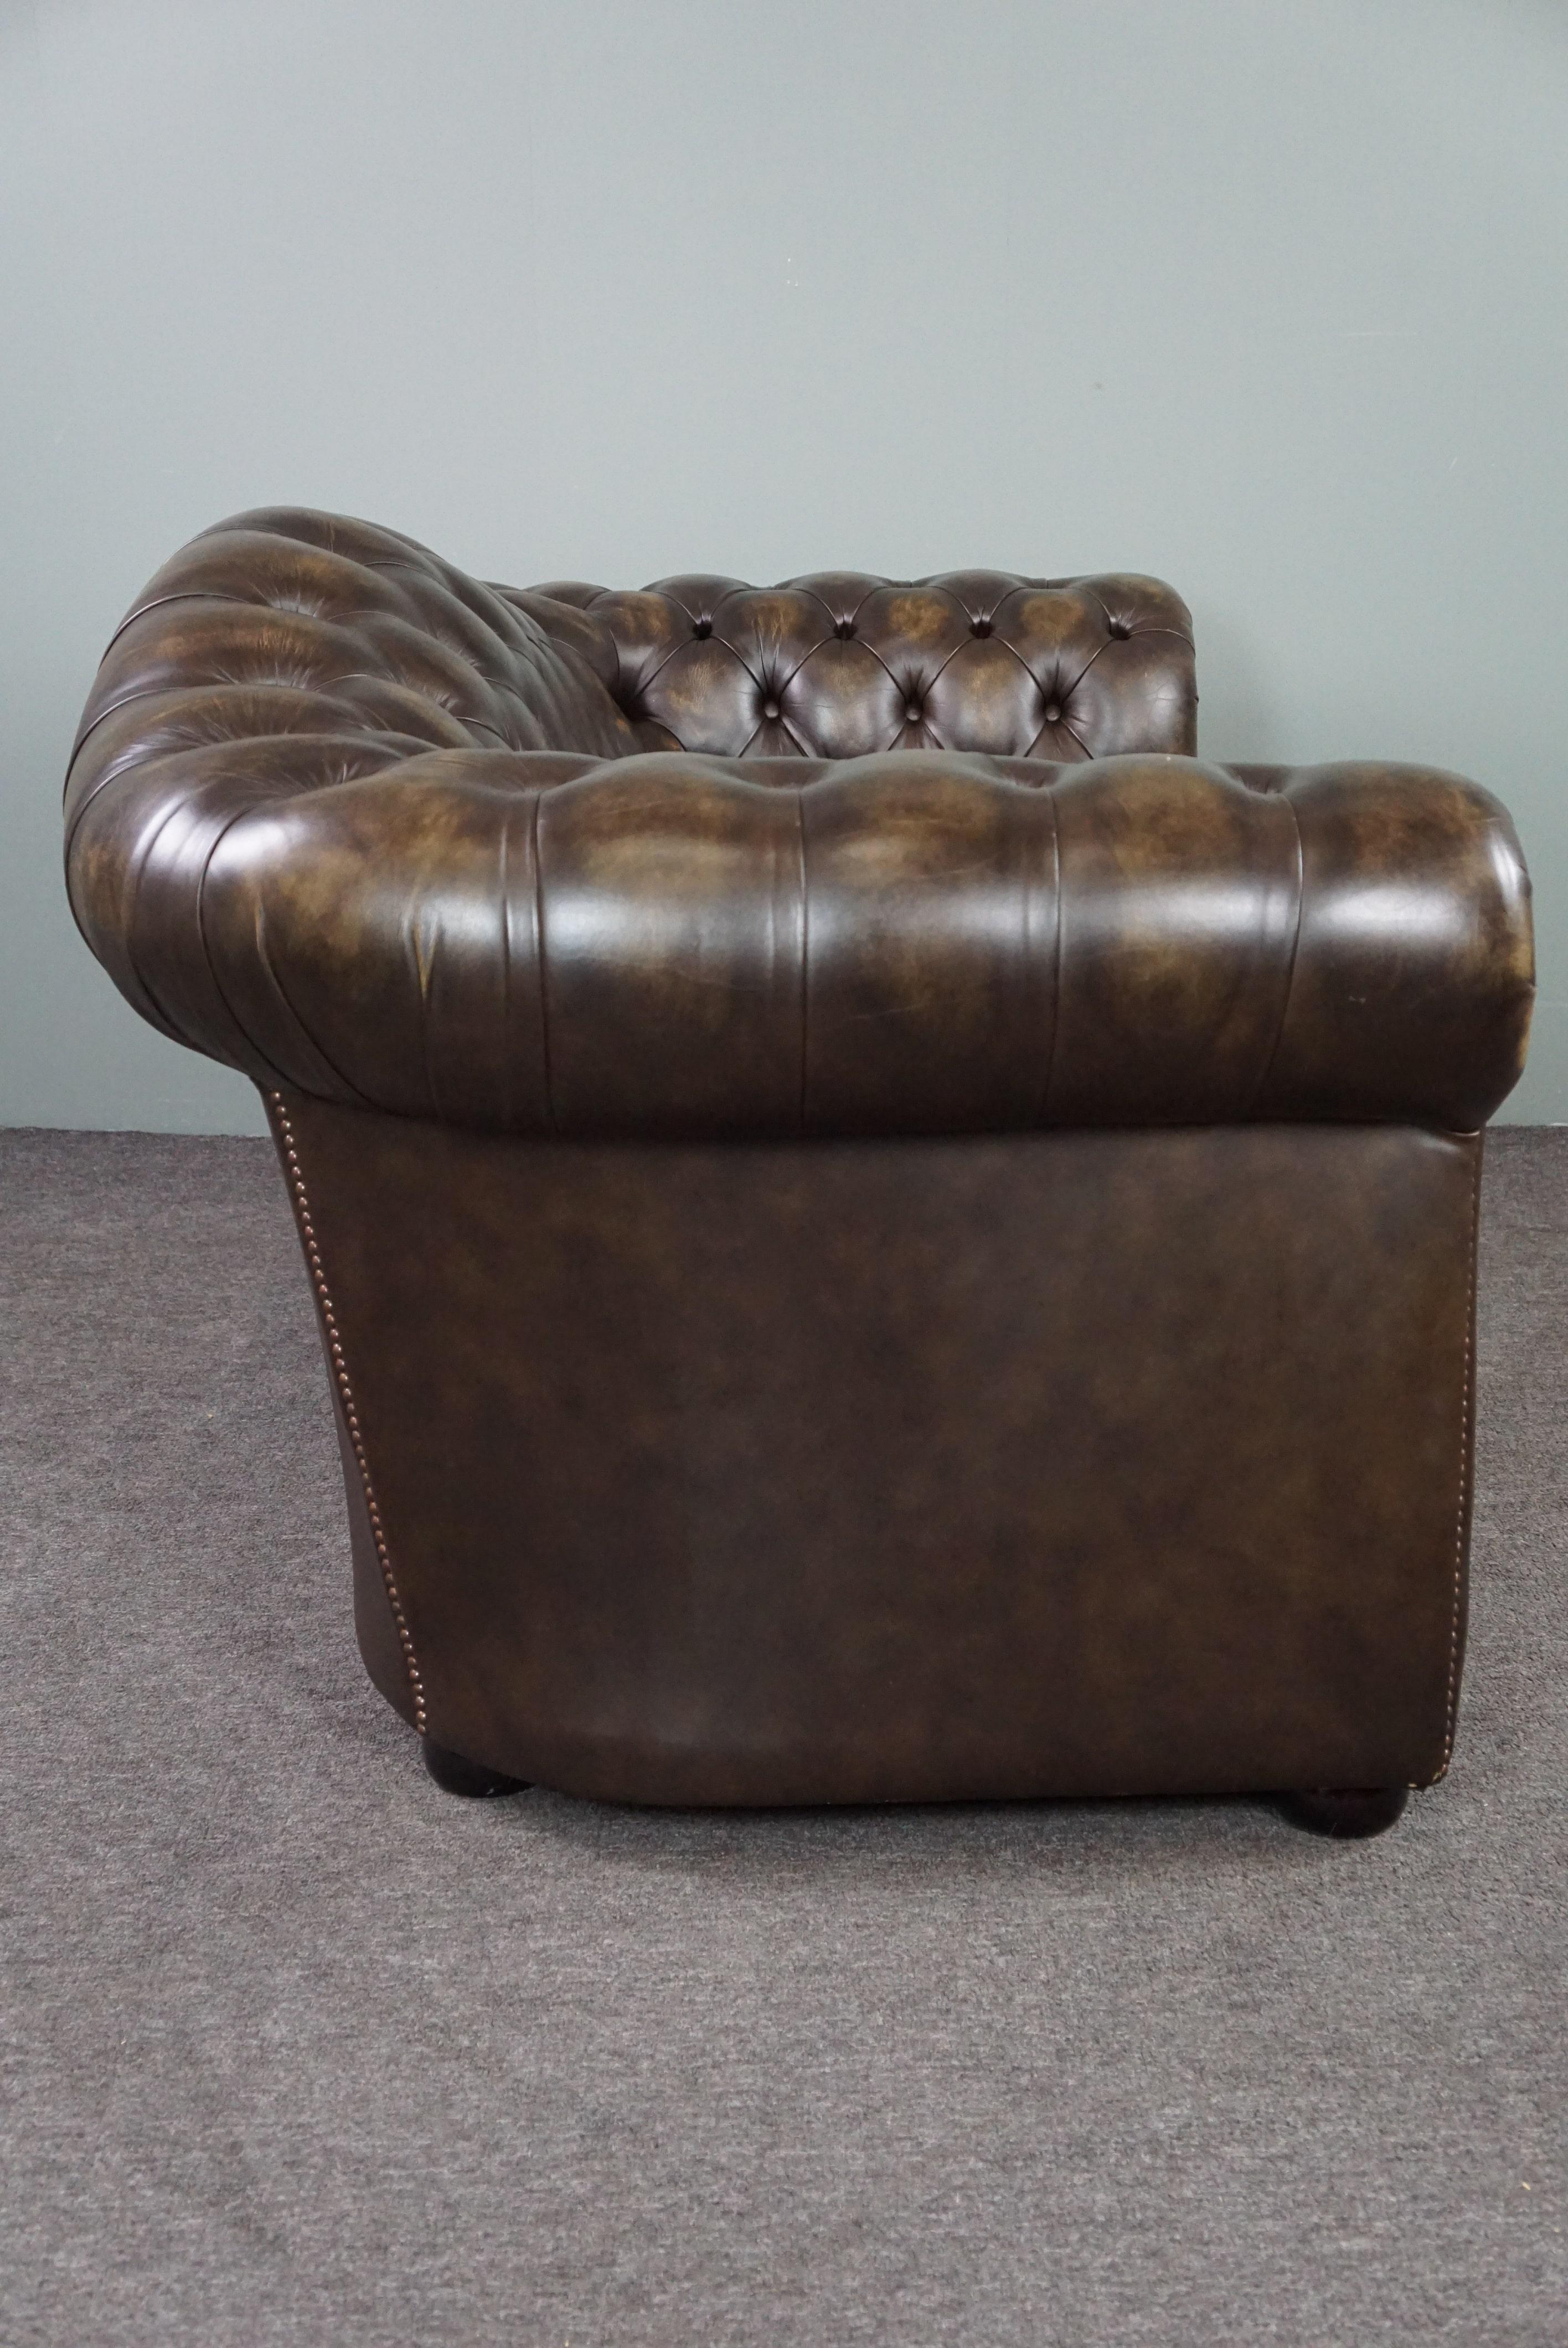 Angeboten wird dieses fast neue Chesterfield Sofa aus Rindsleder, 2 Sitzer.

Dieses Chesterfield-Sofa aus Rindsleder ist aufgrund seines Designs, seiner Farbe und seines Aussehens ein hervorragendes Beispiel. Das Sofa hat eine formschöne,